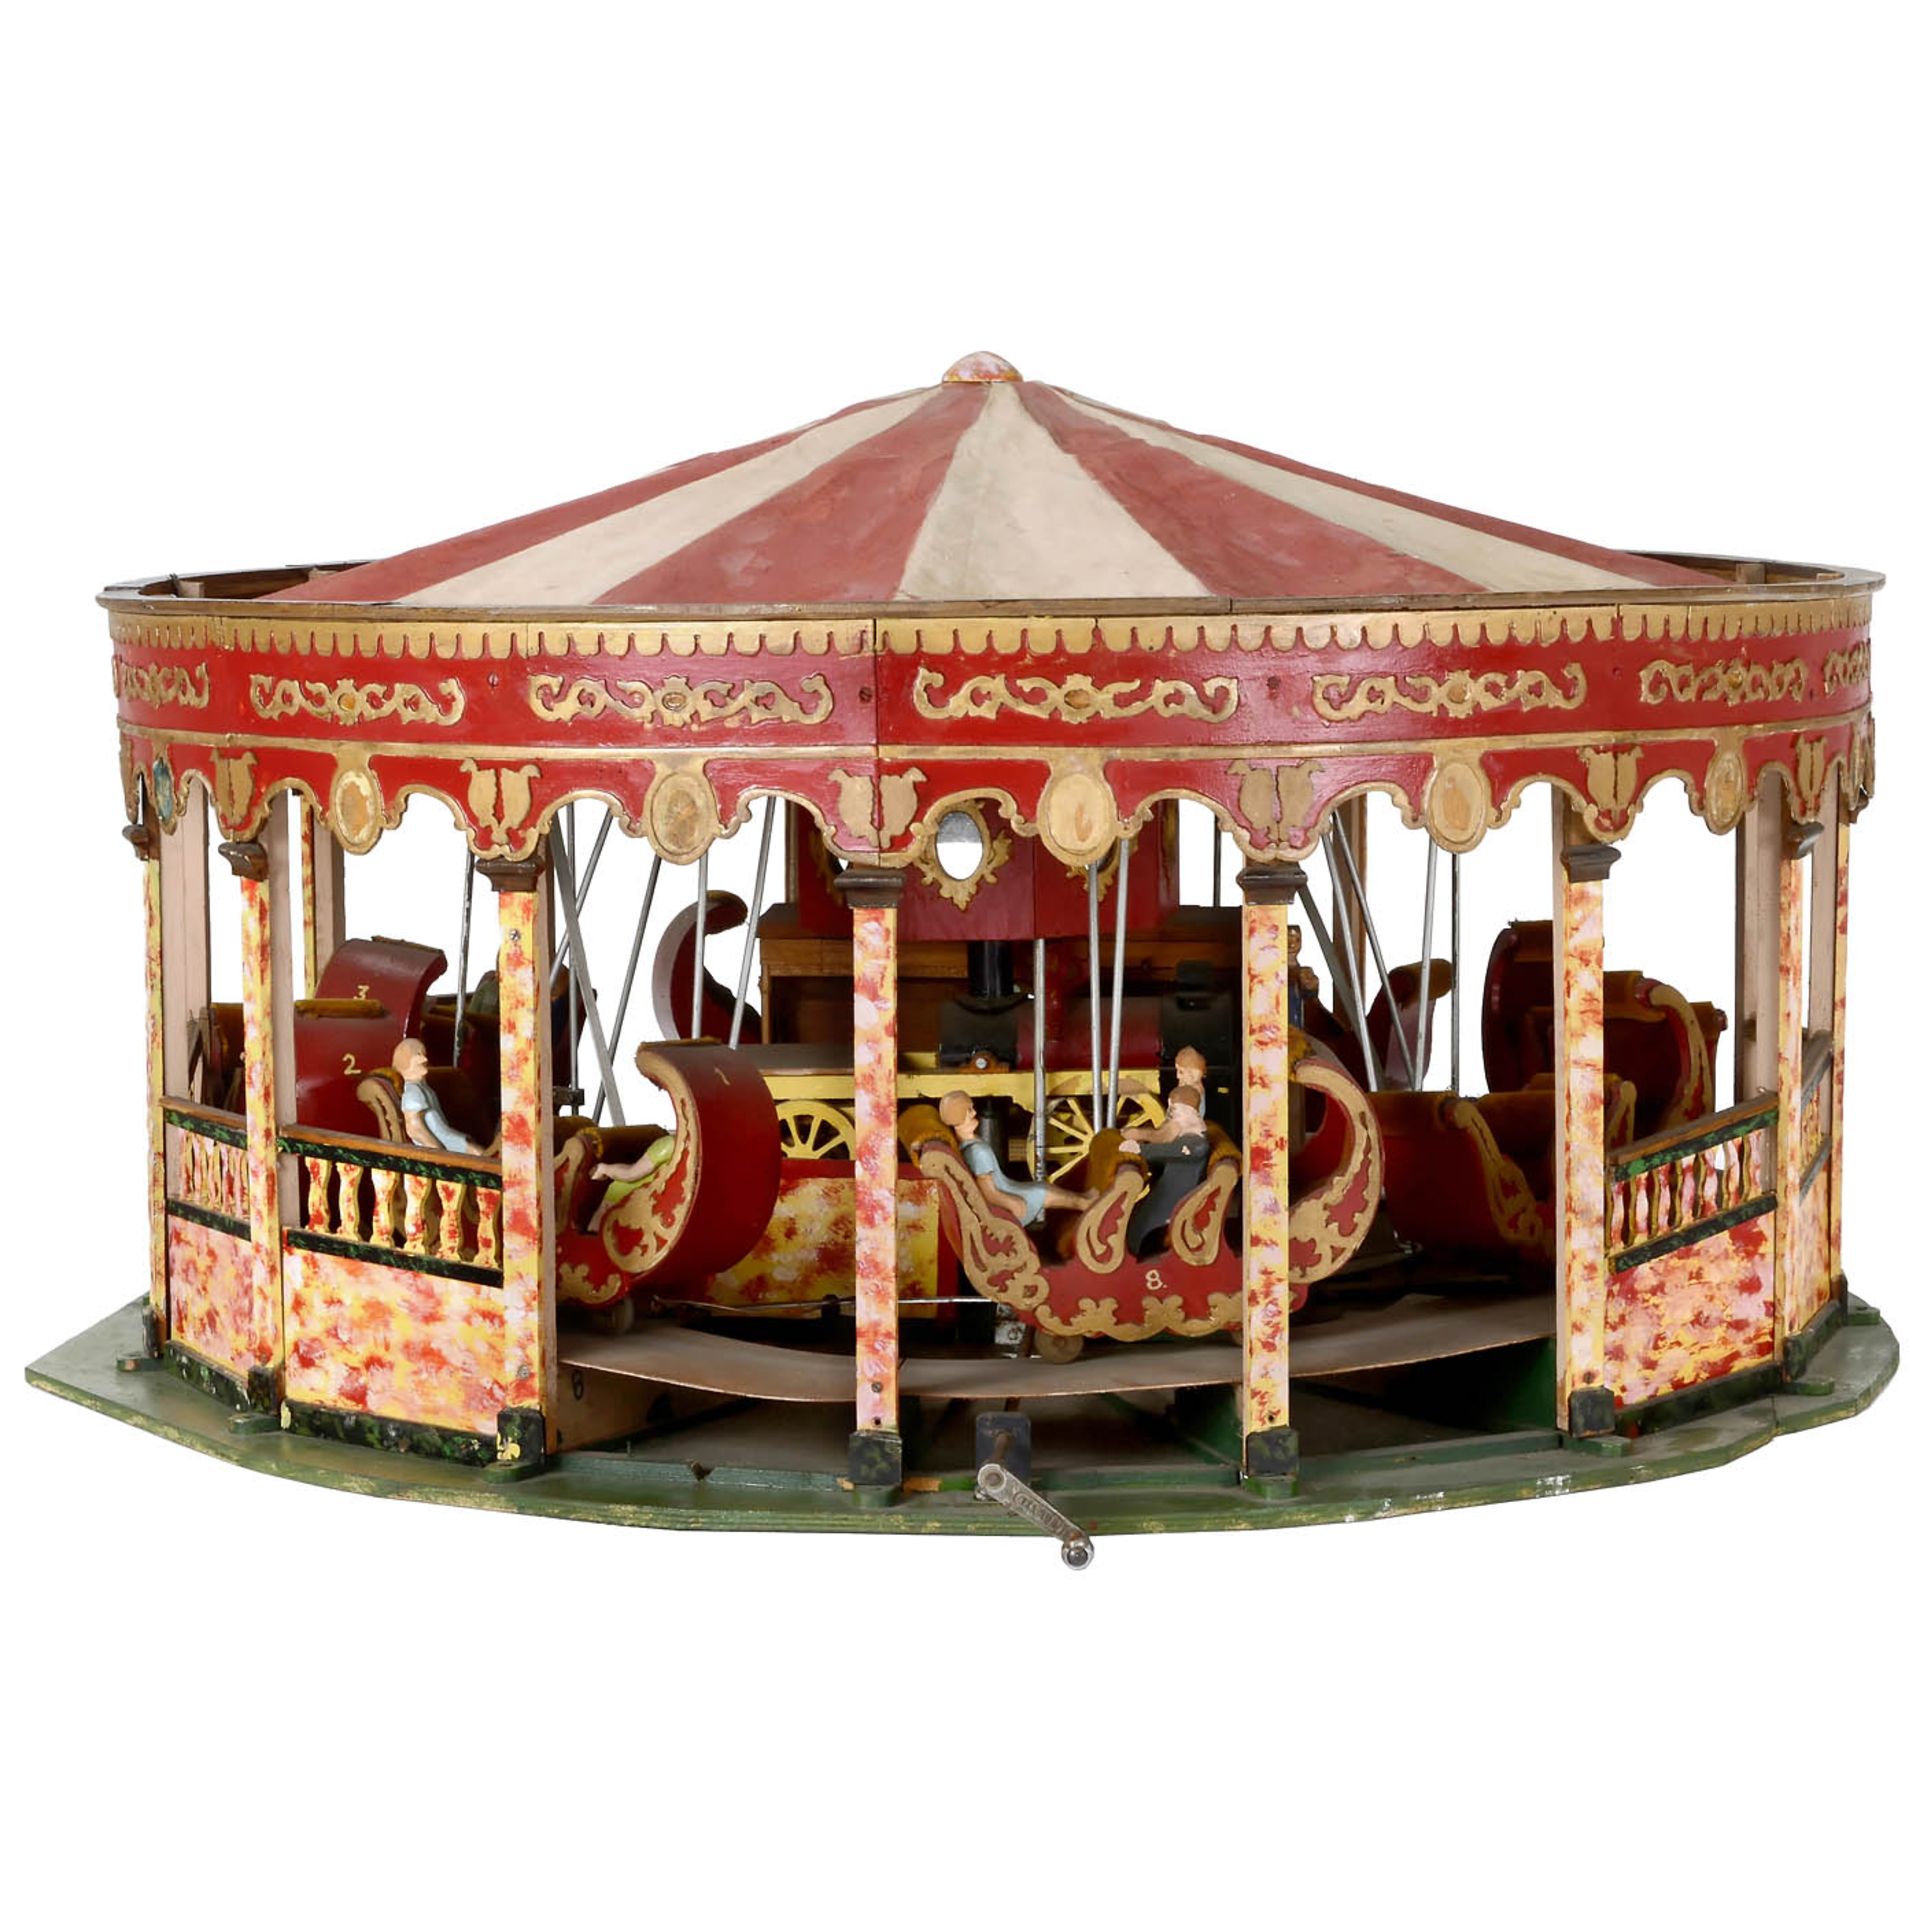 Miniatur-Jahrmarktmodell eines englischen Gondel-Karussells Kirmes-Modell aus Holz, Metall und - Bild 4 aus 4